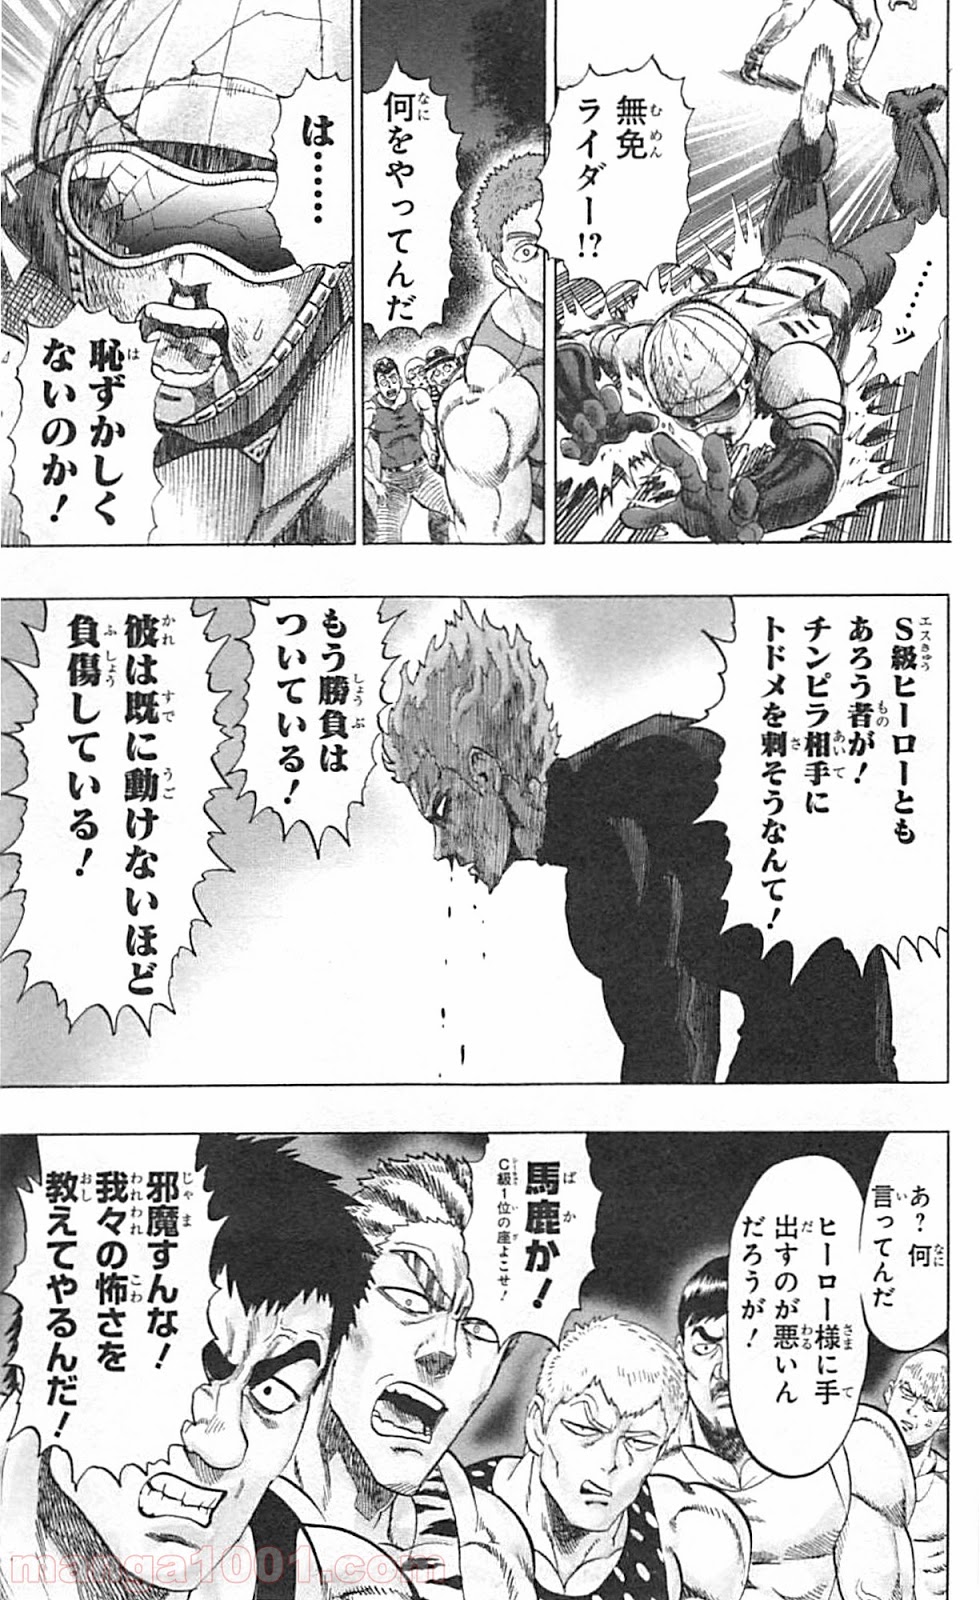 ワンパンマン One Punch Man Raw 第47話 Manga Raw